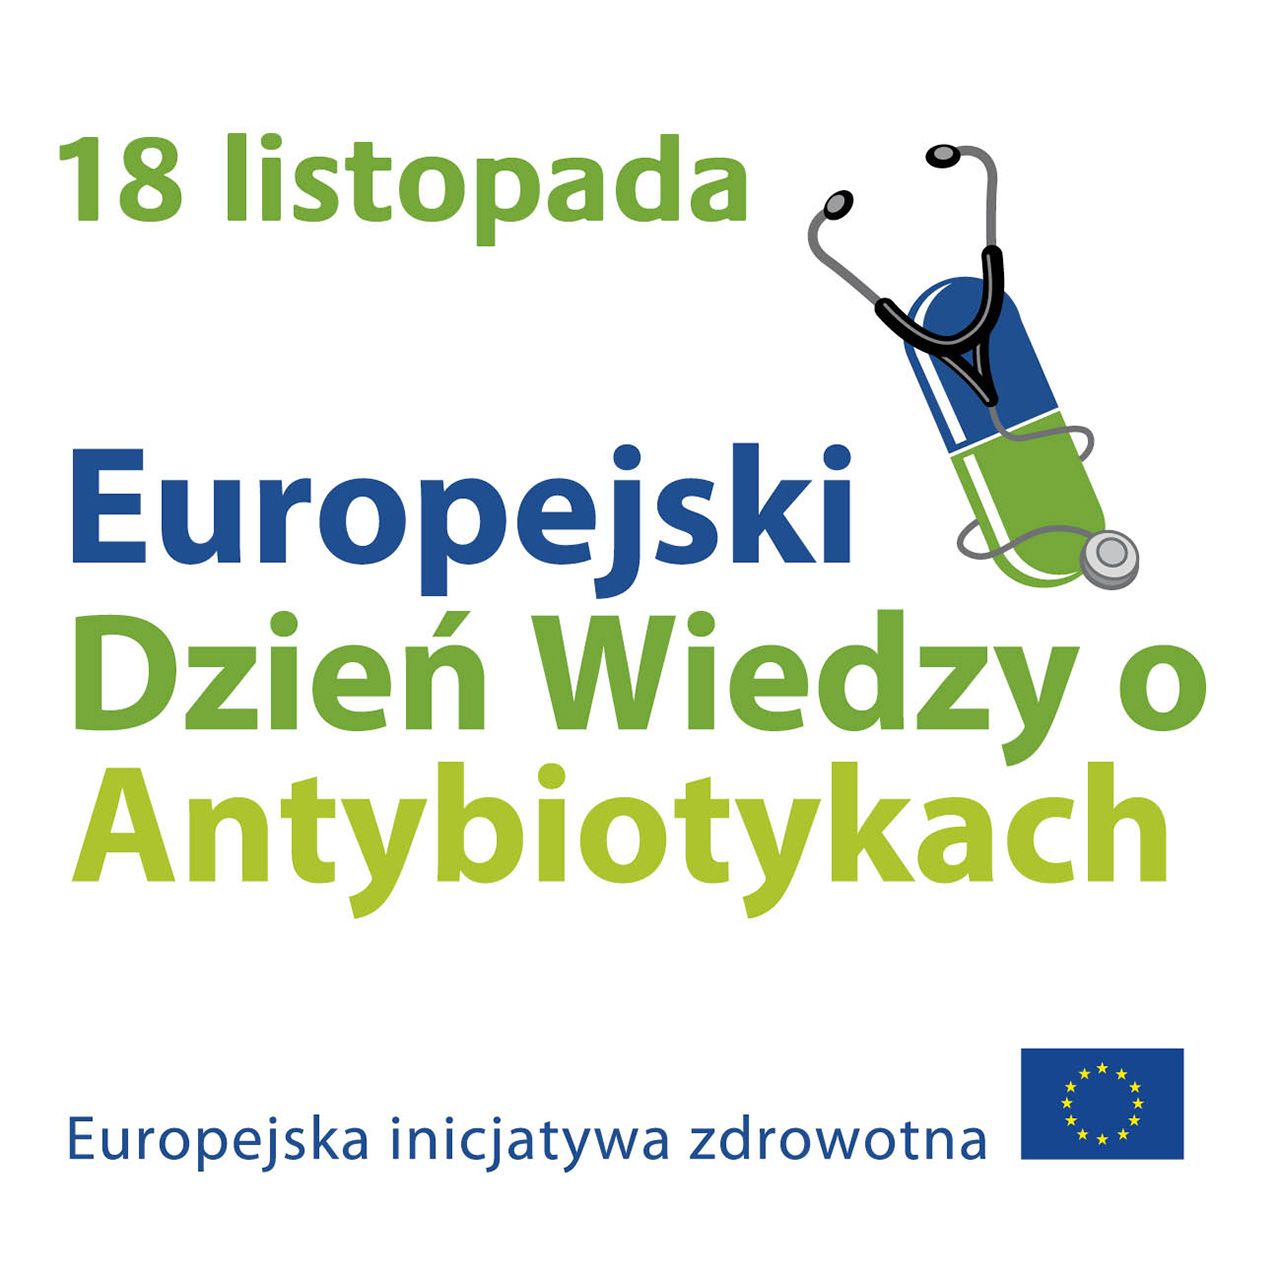 europejski-dzien-wiedzy-o-antybiotykach-1.jpg